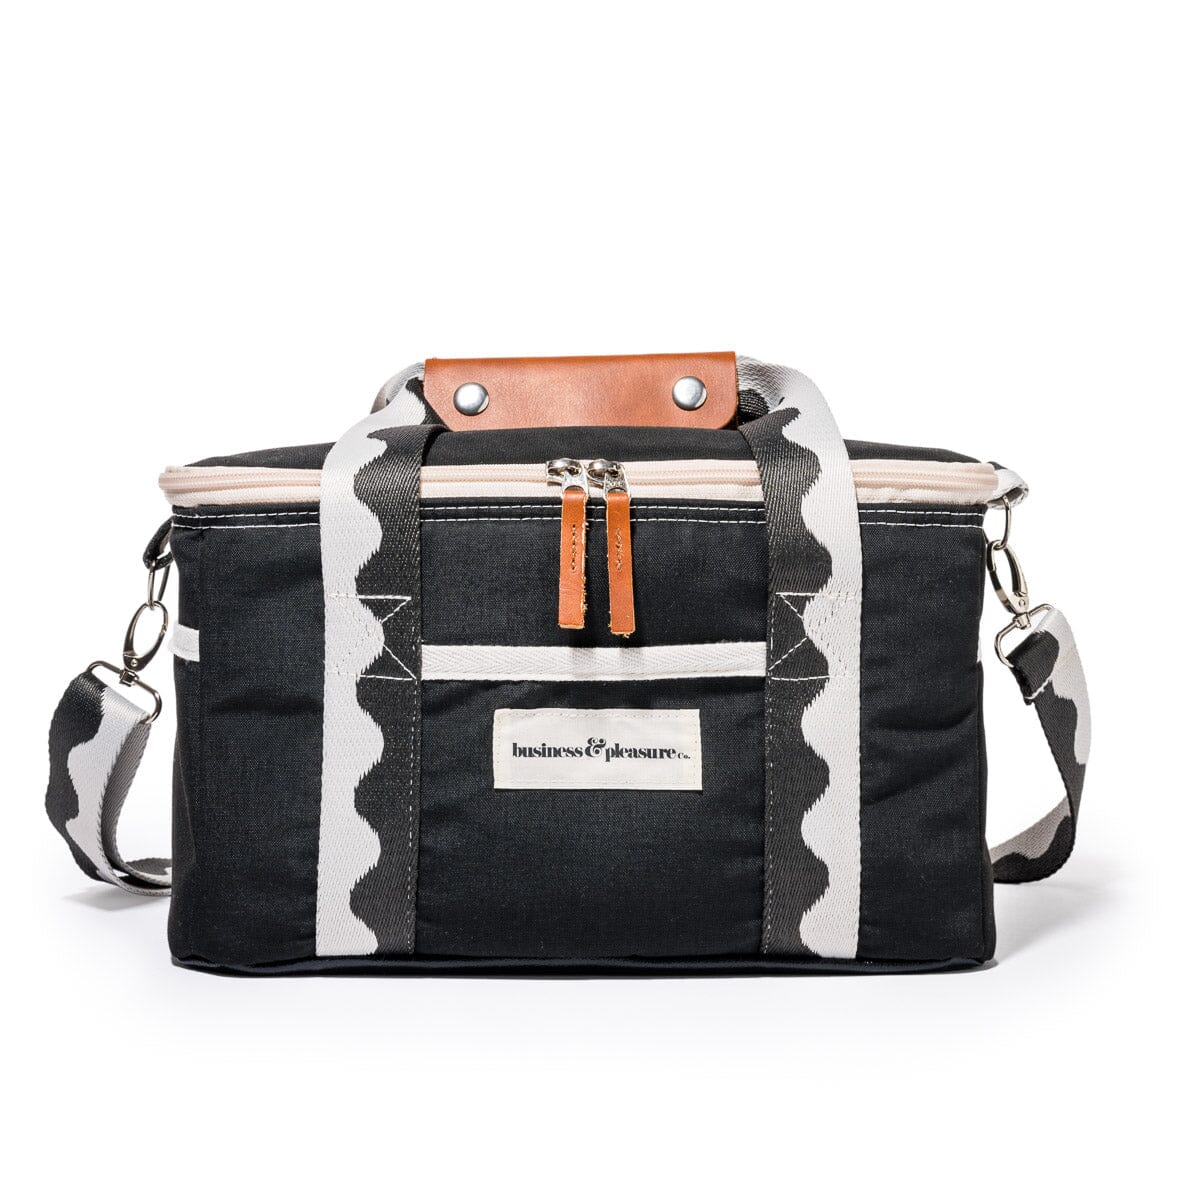 The Premium Cooler Bag - Rivie Black Premium Cooler Business & Pleasure Co Aus 